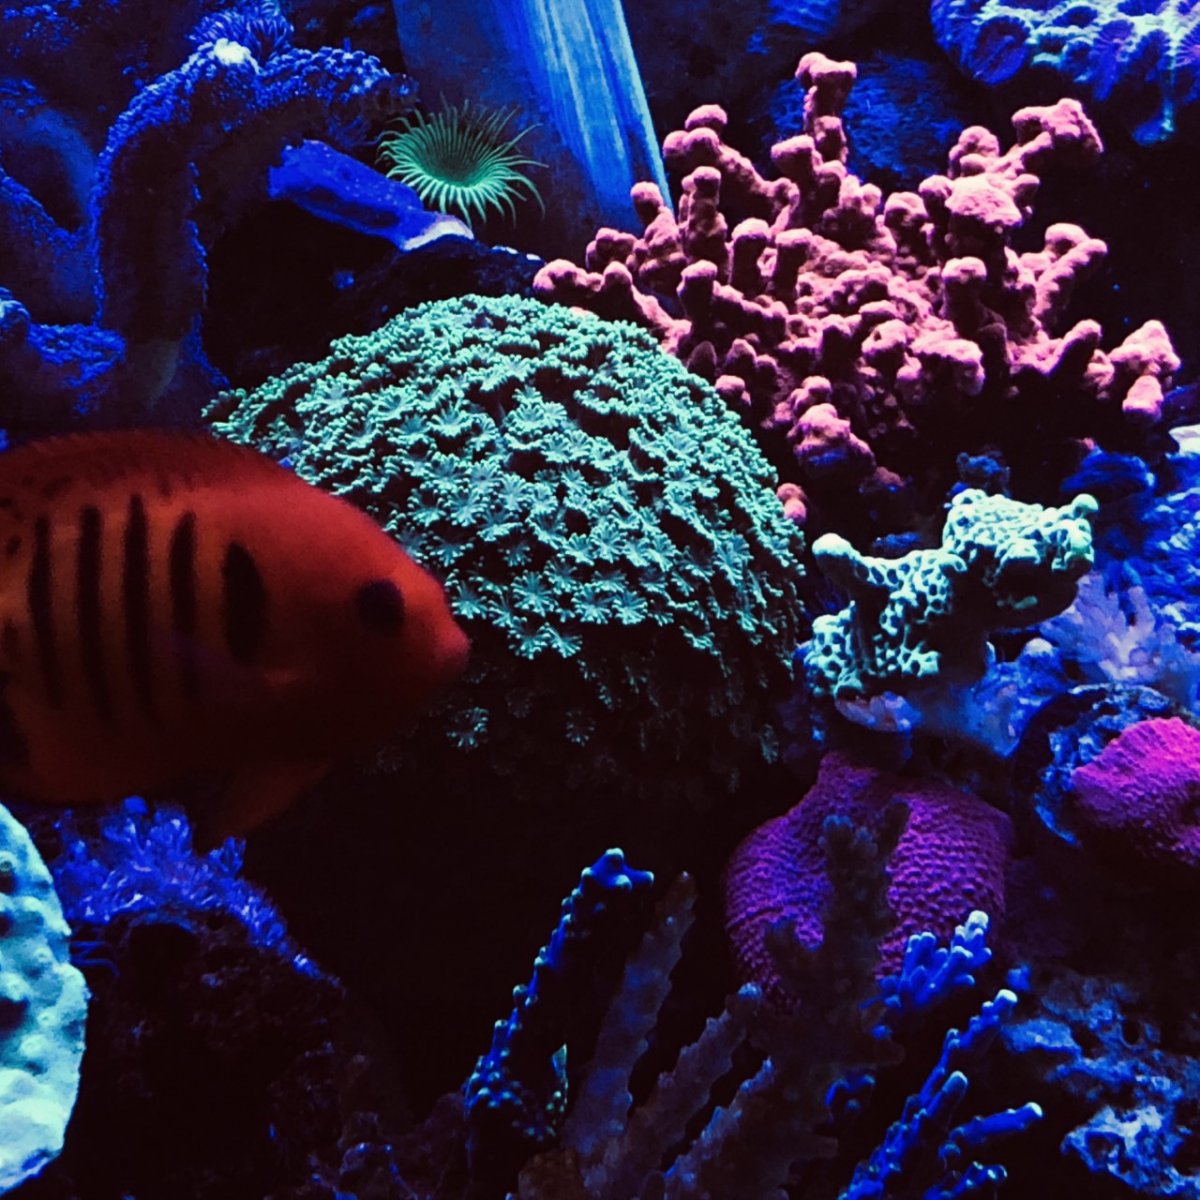 360g corals2.jpg